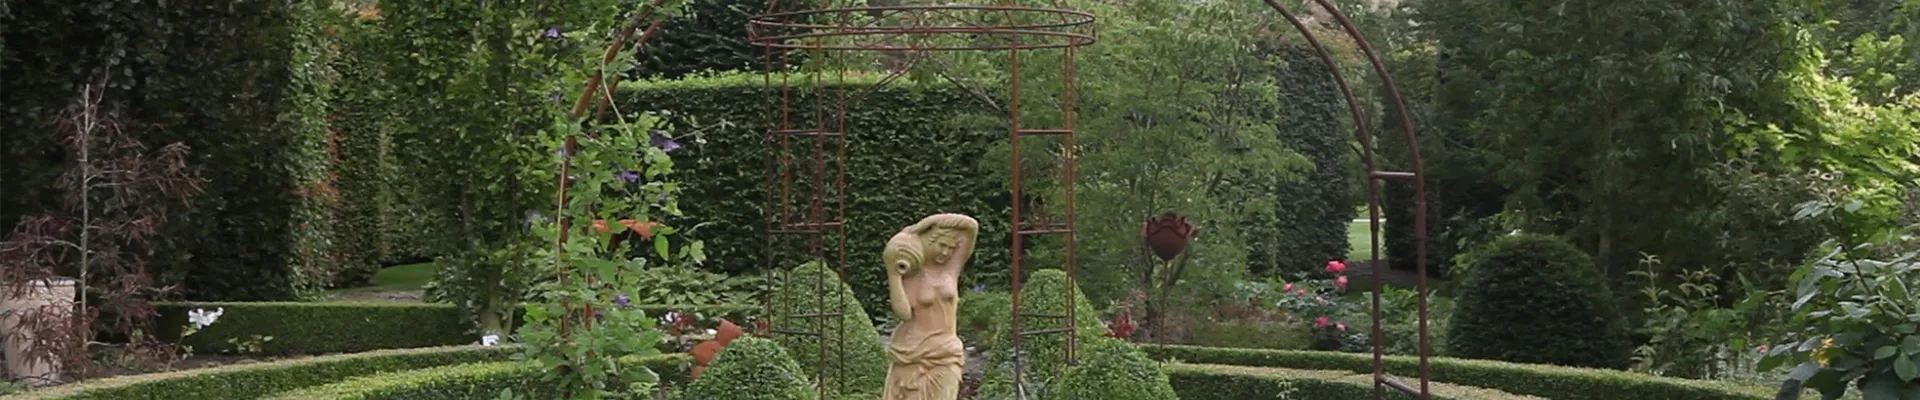 Gartengestaltung - Romantischer Garten (thumbnail)